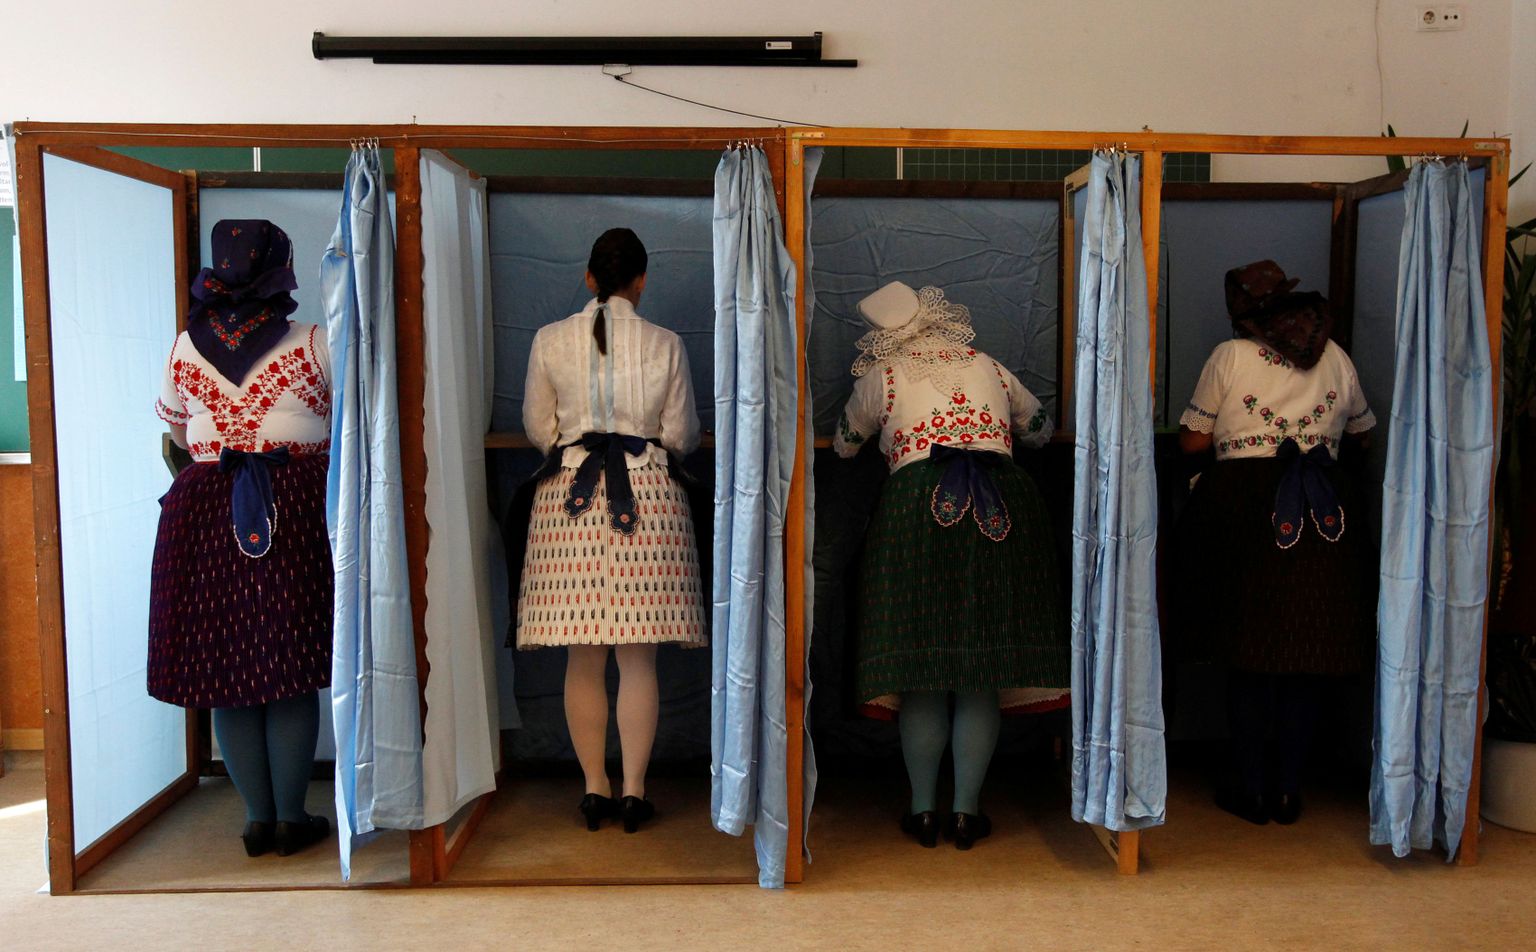 Rahvarõivastes ungarlannad Veresegyházis hääletamas.